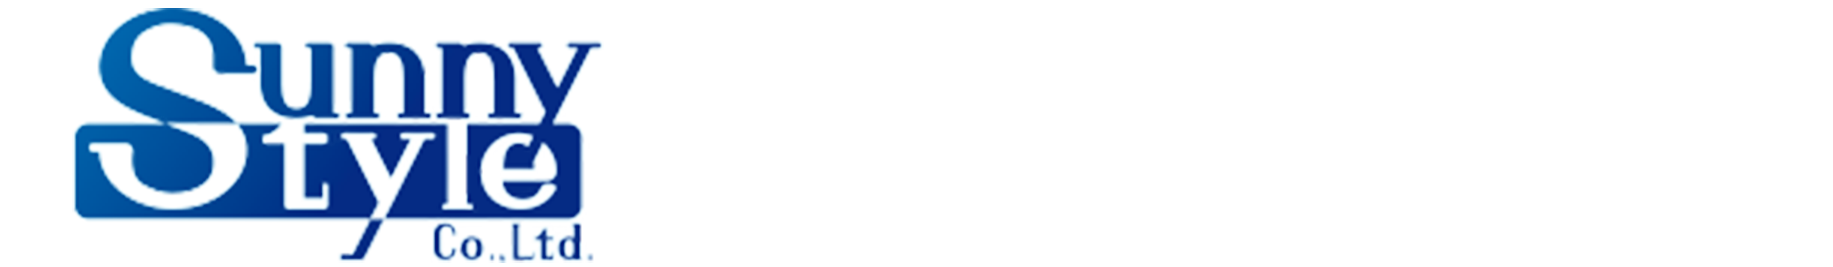 株式会社サニースタイルのロゴ